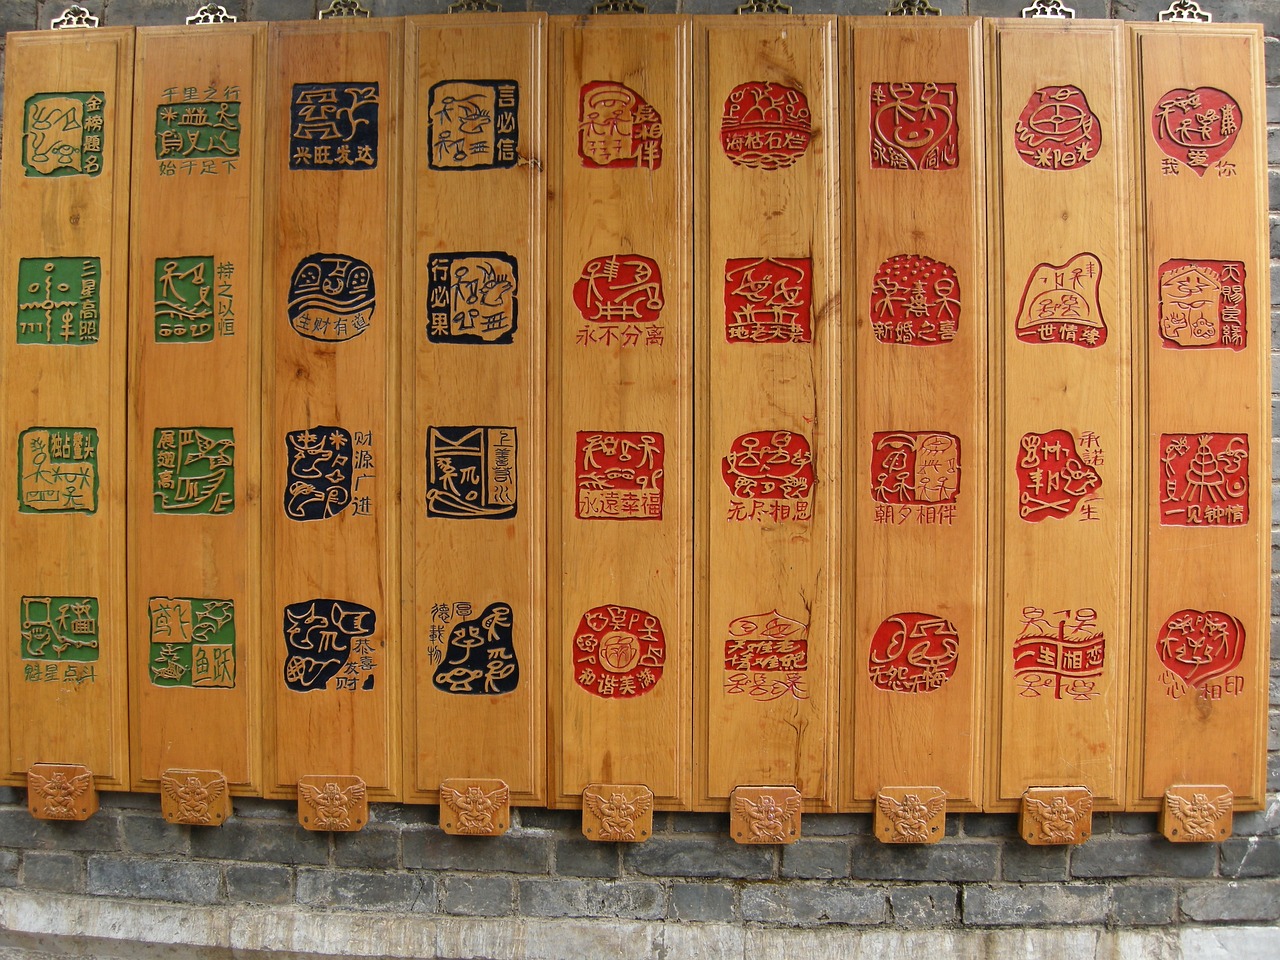 lijiang yunnan china free photo